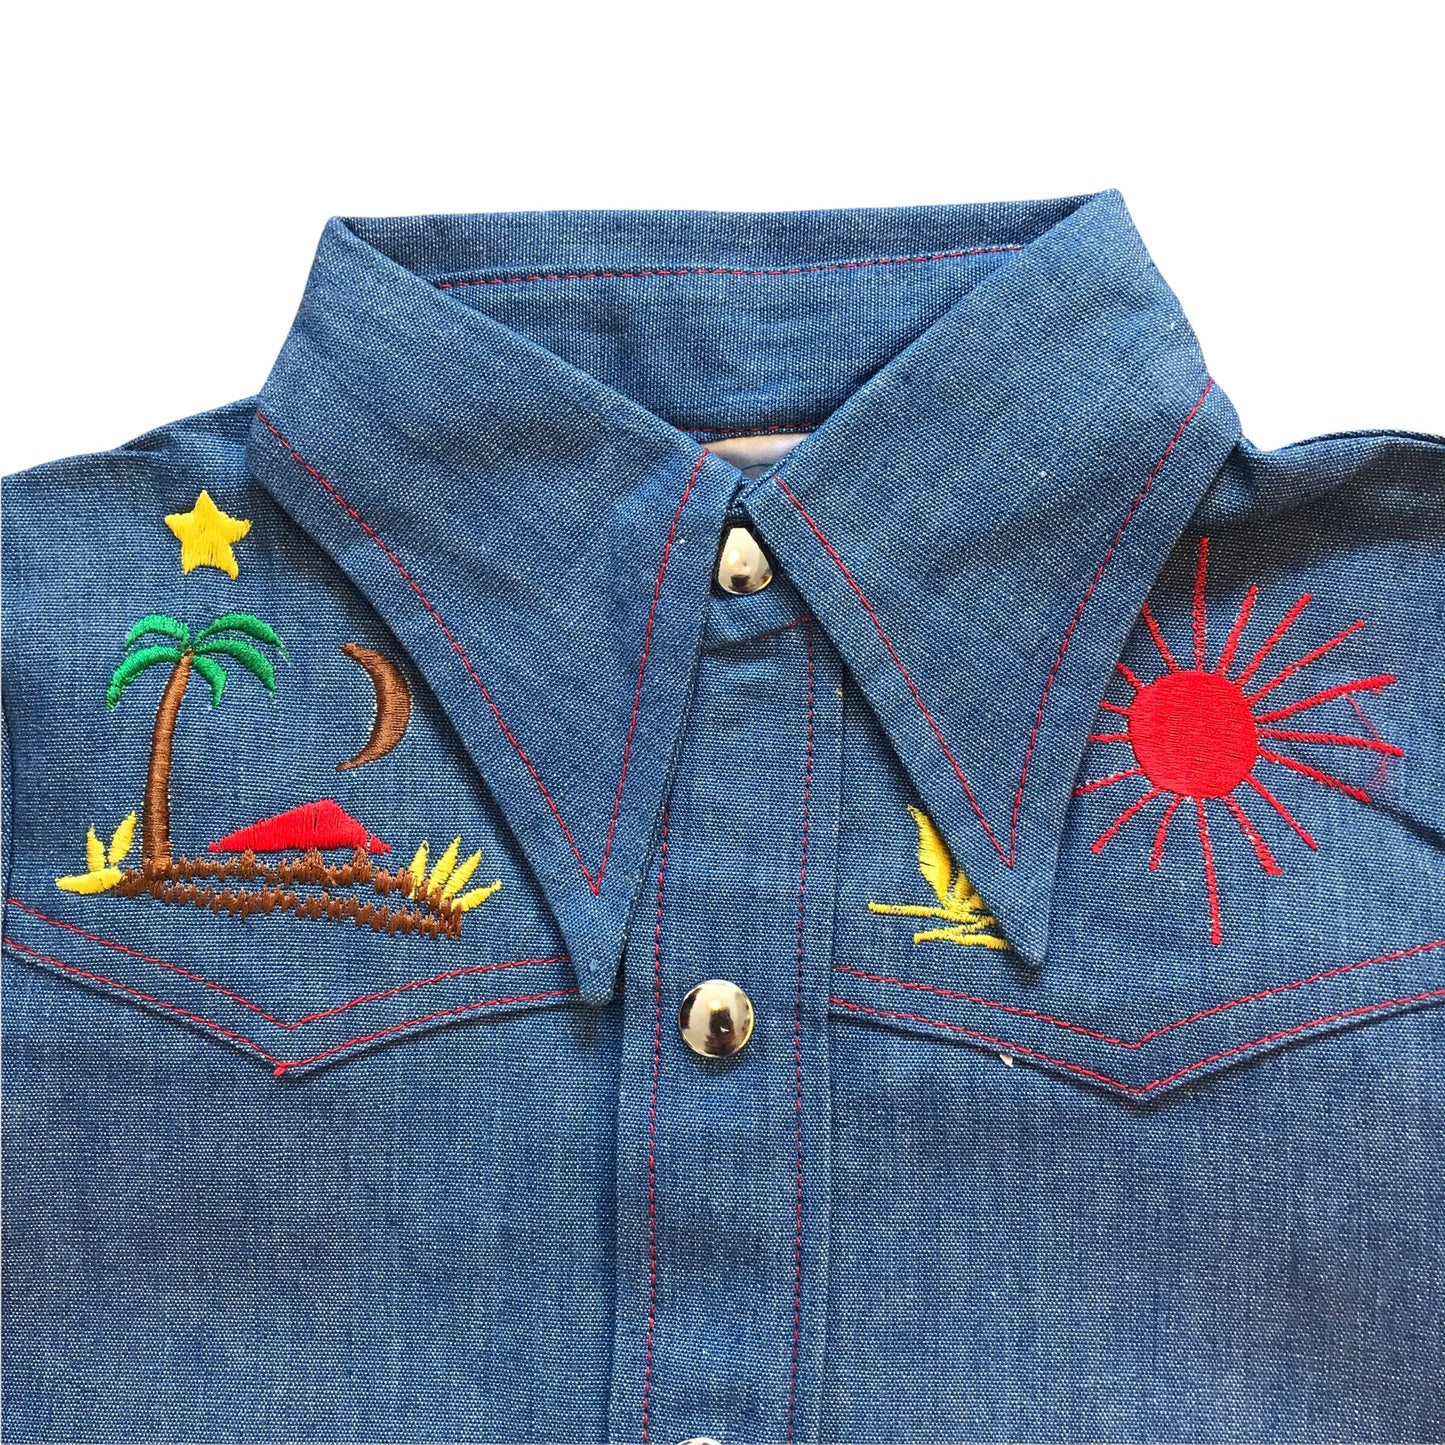 Vintage 1960s Embroidered Denim Shirt / 5-6Y